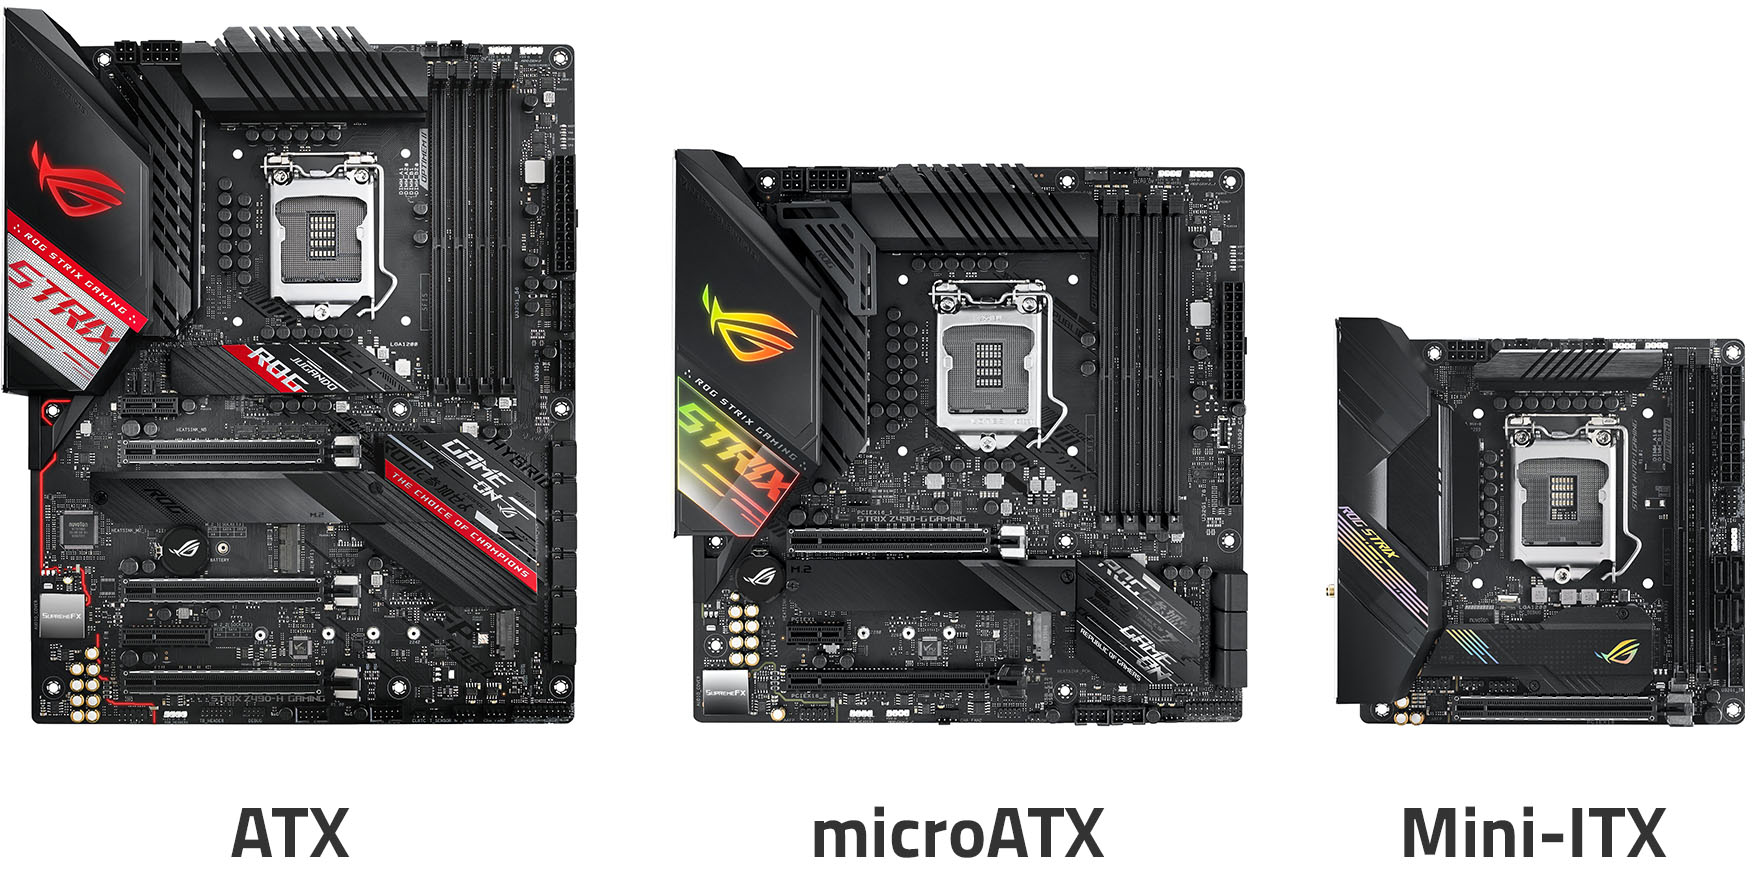 Porovnání ATX, microATX a Mini-ITX základních desek